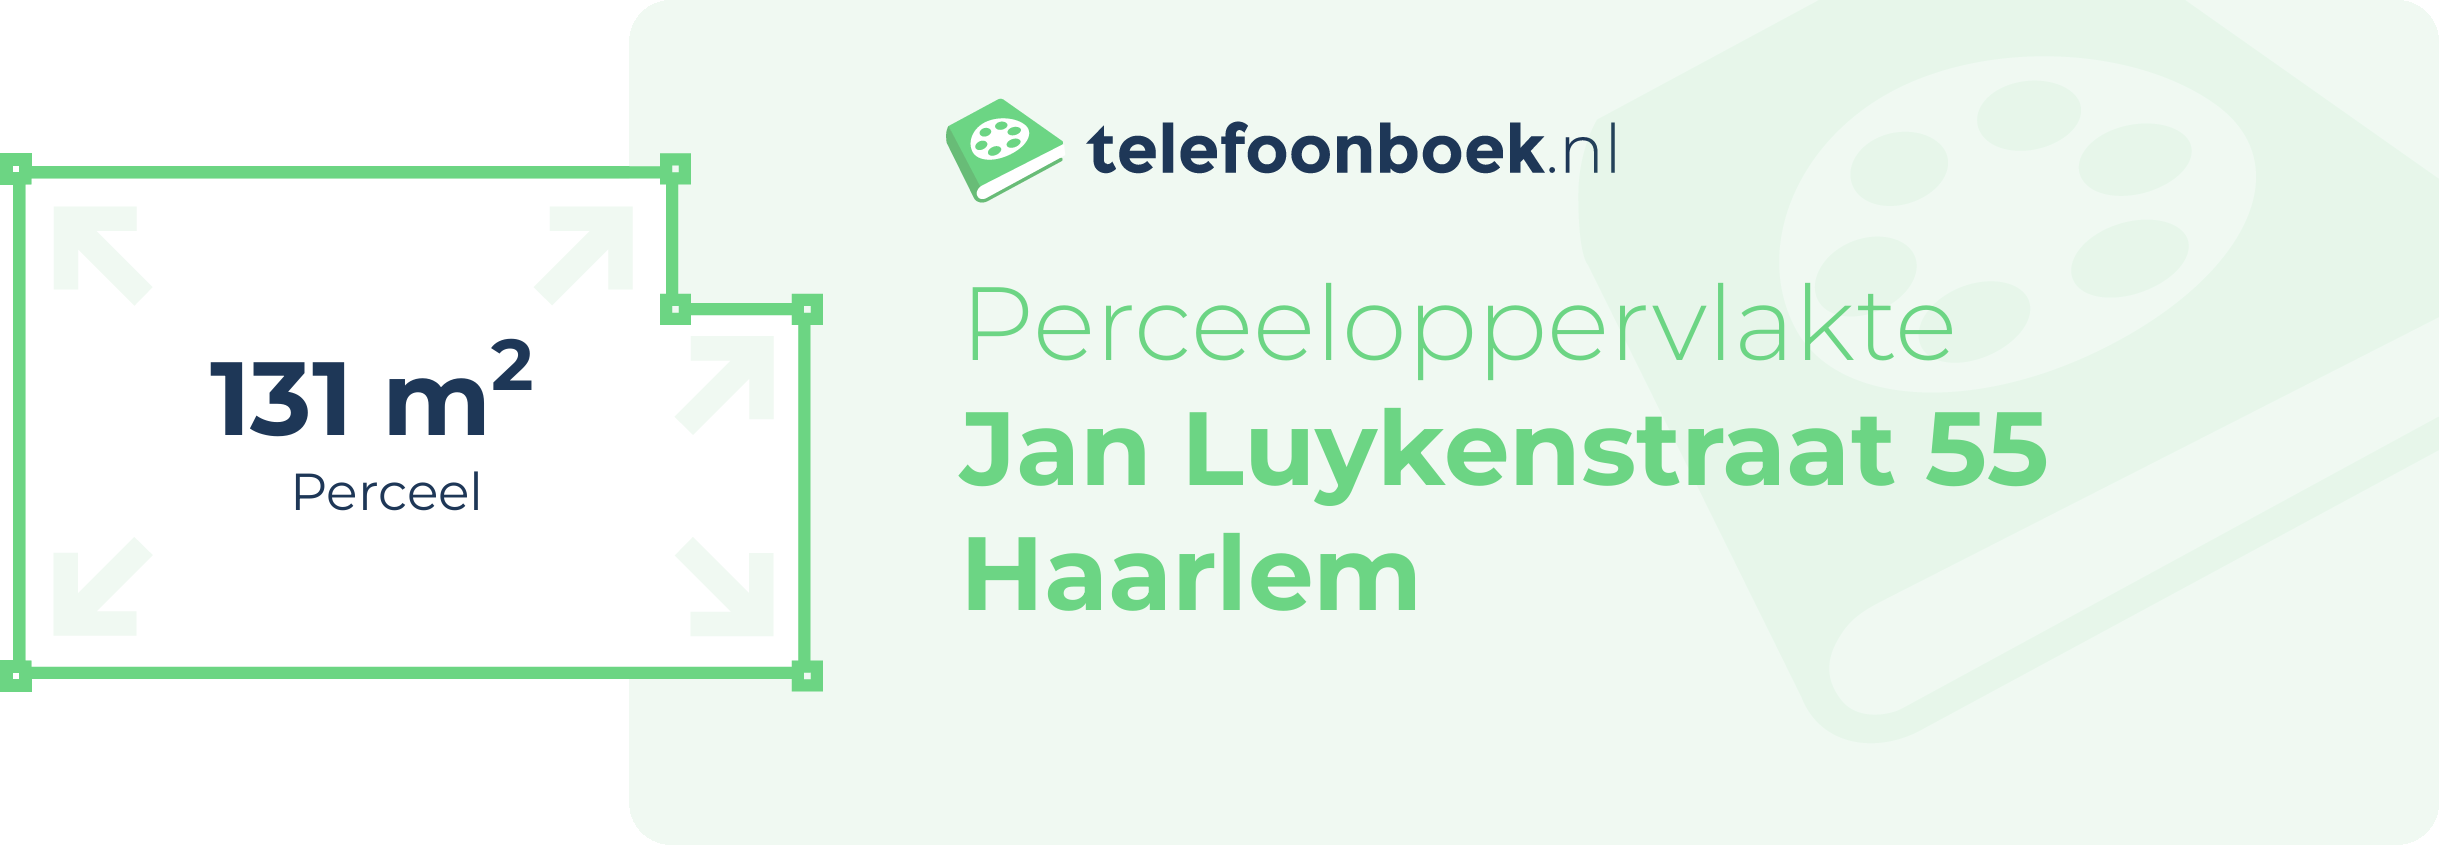 Perceeloppervlakte Jan Luykenstraat 55 Haarlem